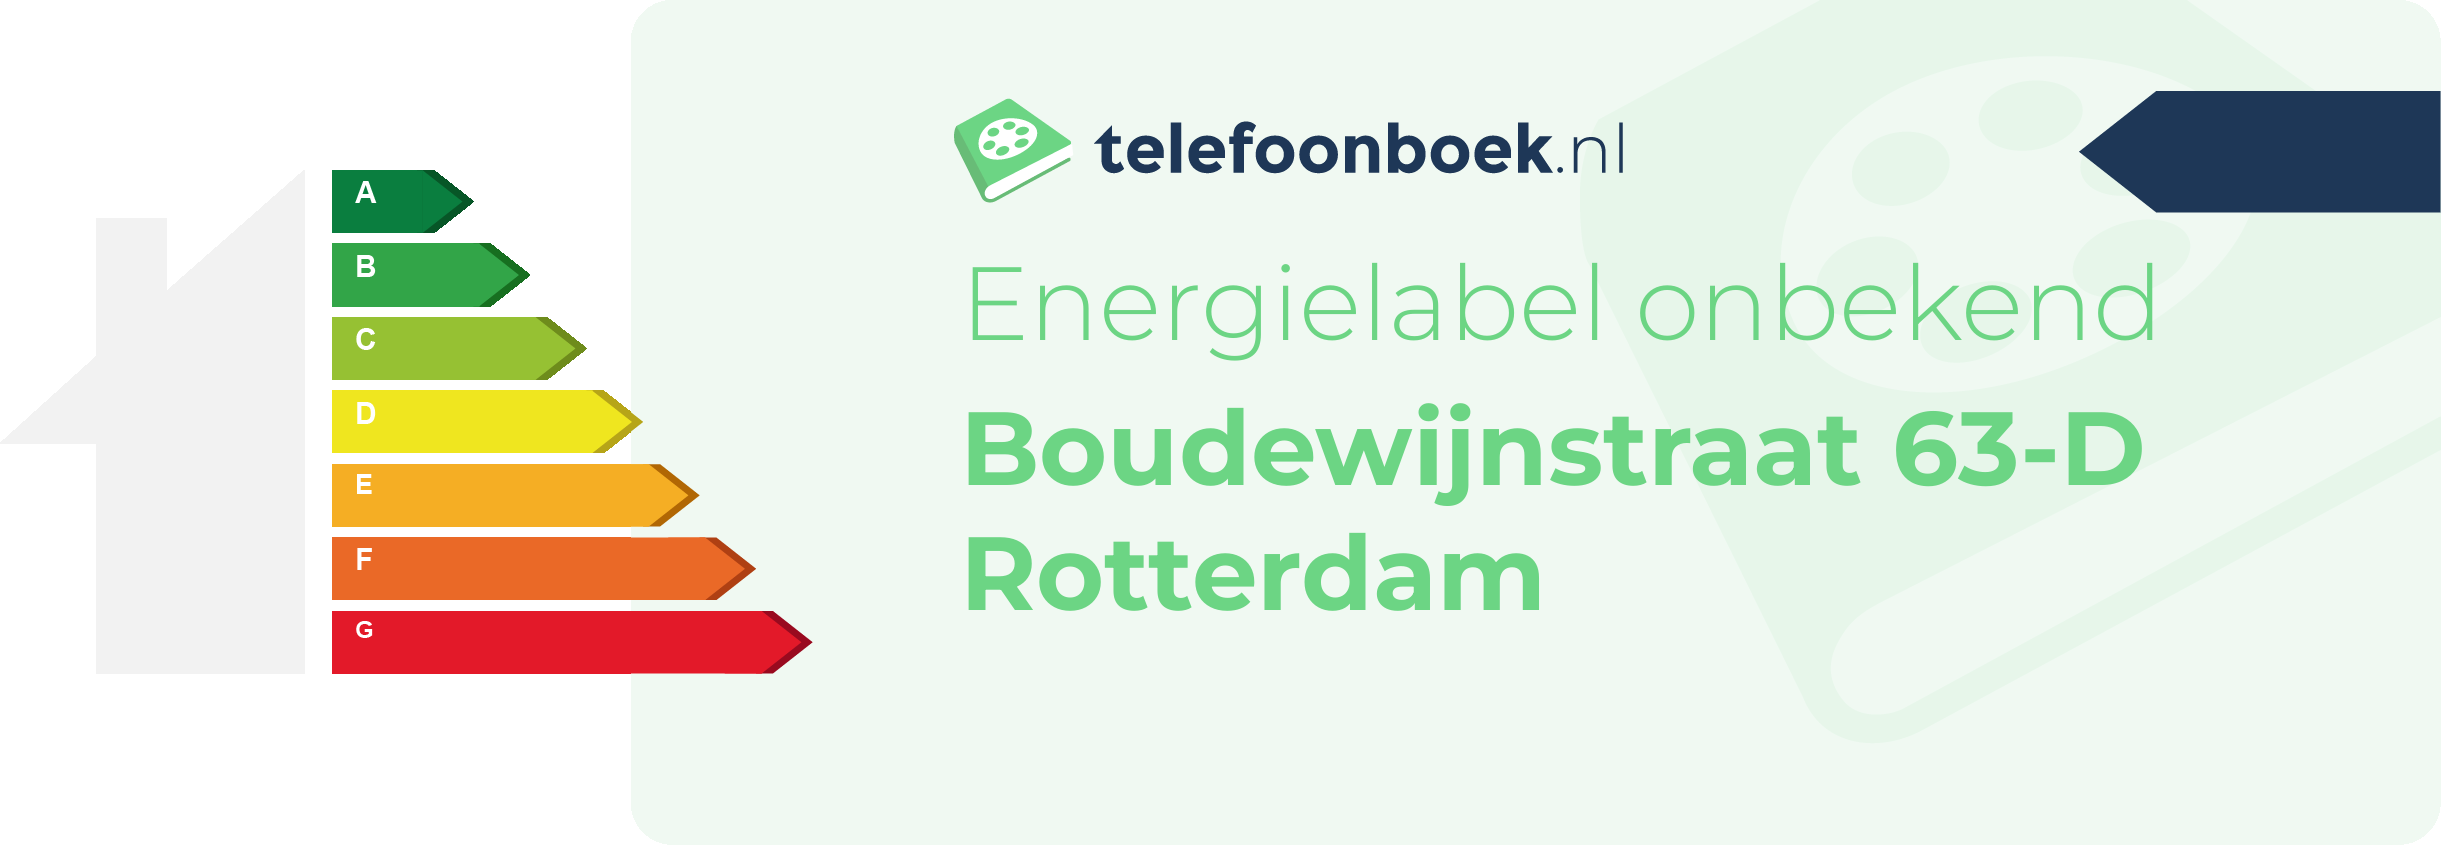 Energielabel Boudewijnstraat 63-D Rotterdam